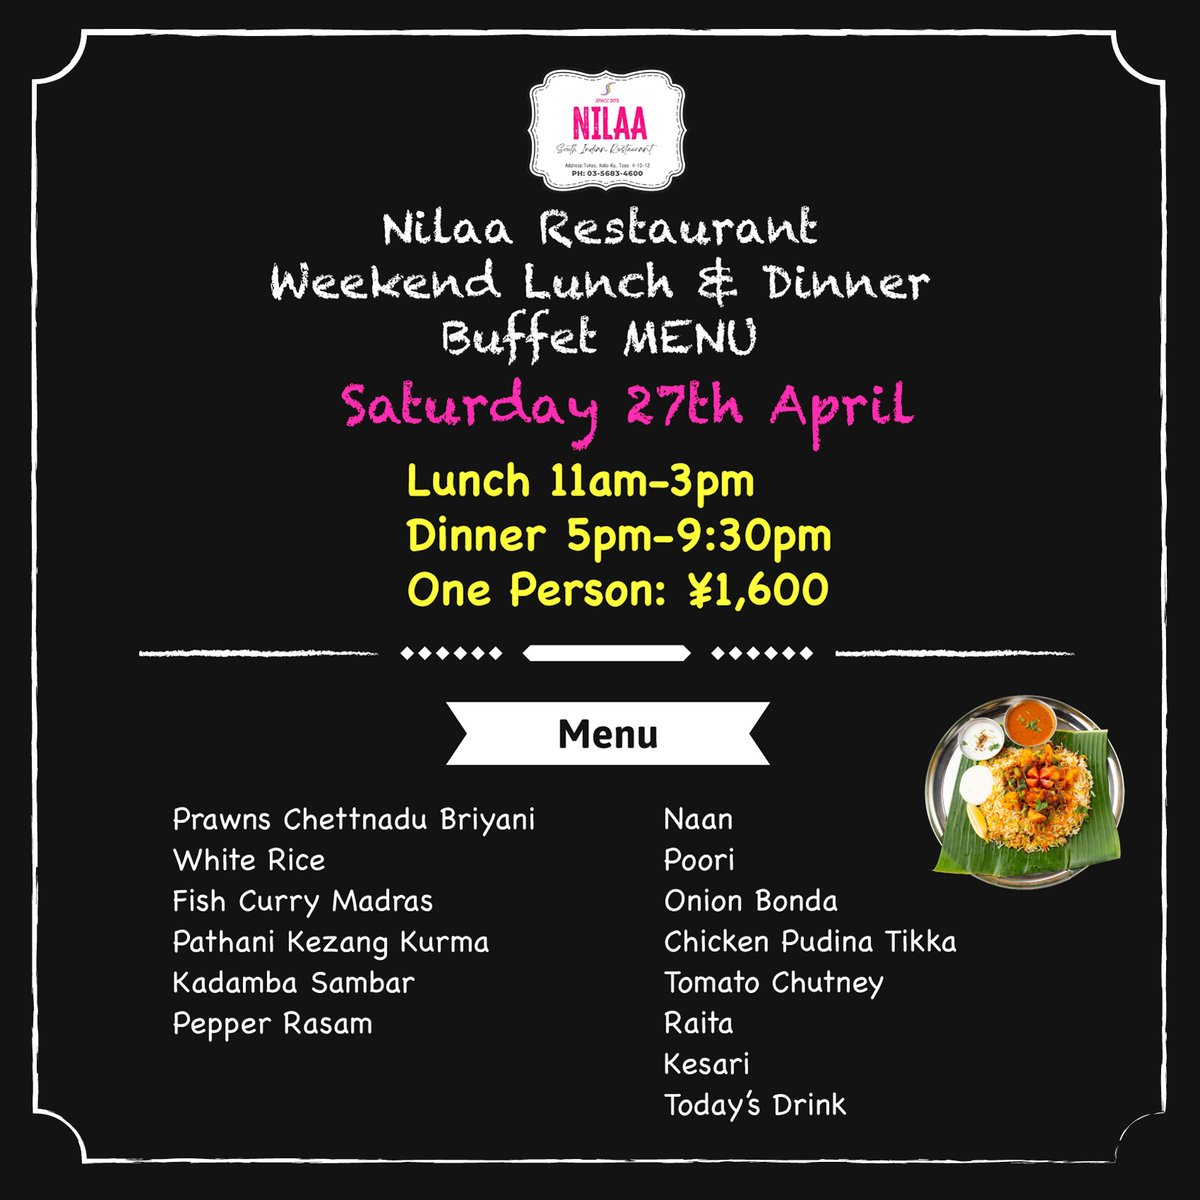 🍽️ Nilaa Weekend Buffet 🍽️
#ニラーレストラン 東陽町店
Saturday 27st April

Lunch 11am-3pm
Dinner 5pm-9:30pm
👤¥1,600

Please enjoy #SouthIndianfood 😋

4/27(土)のランチ＆ディナーブッフェメニューです。
ビリヤーニーはチェッティナード式エビ🦐
ご来店をお待ちしています！